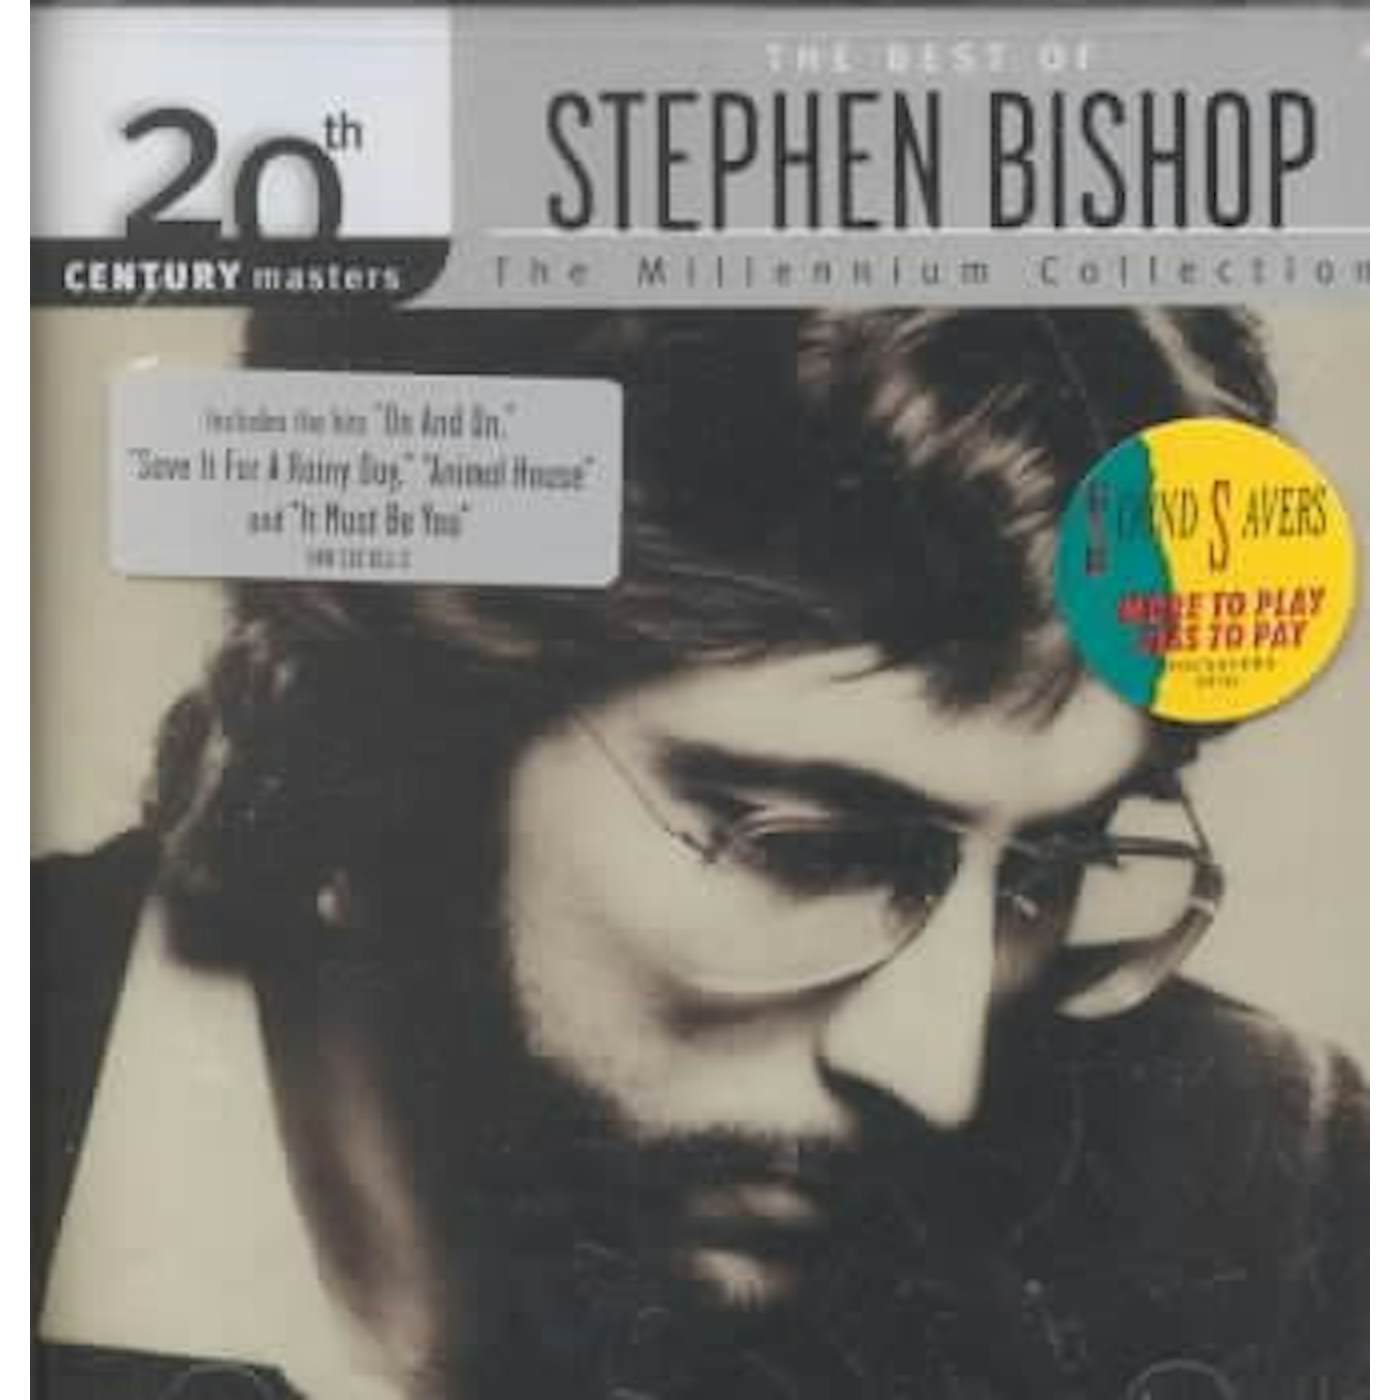 Stephen Bishop Millennium Collection - 20th Century Masters CD